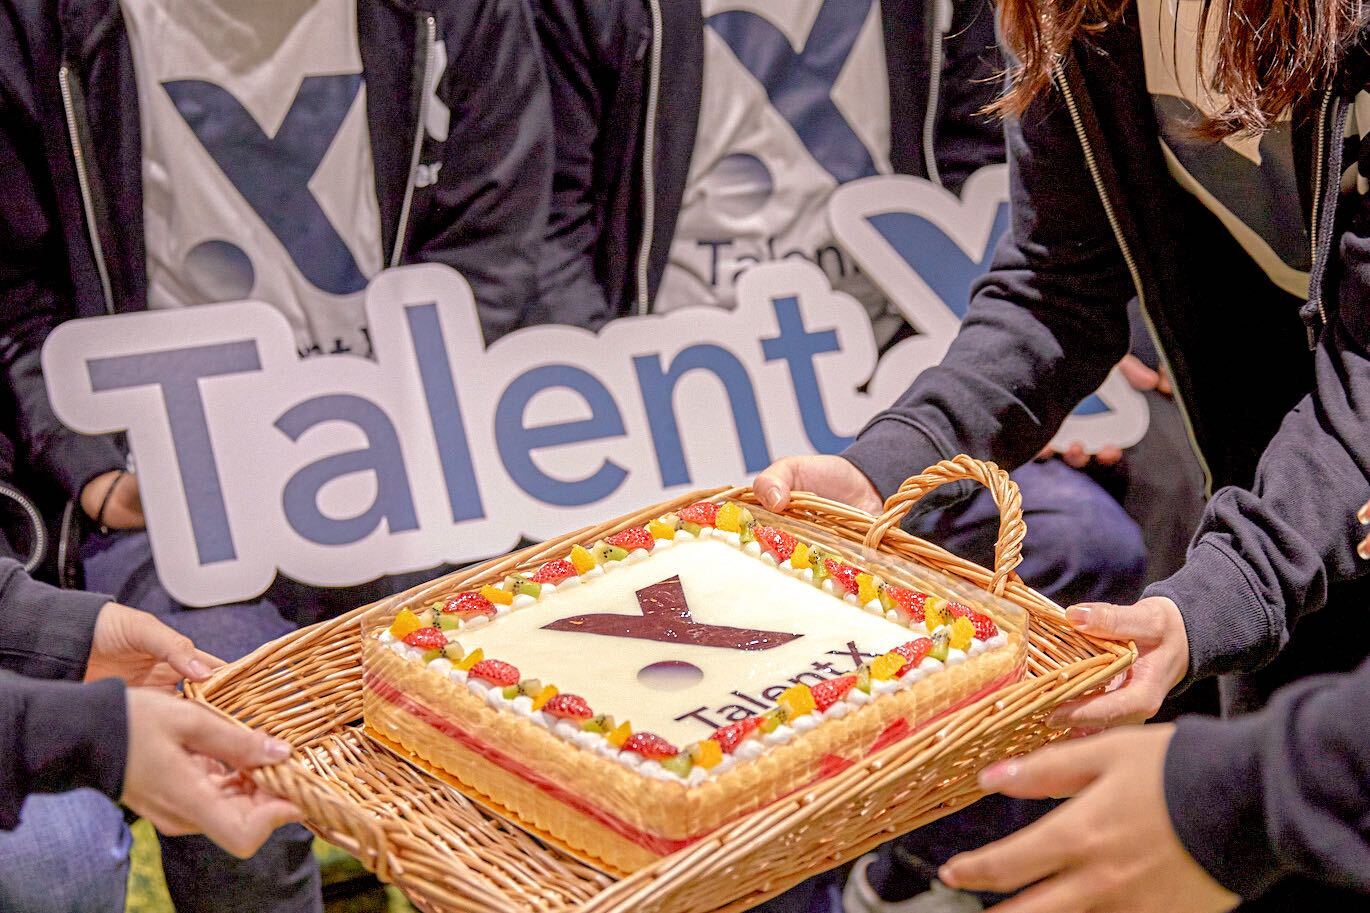 株式会社TalentXは、パーソルキャリア社の社内ベンチャーとして創業しました。
2018年のMBOより6期目を迎え、100名超の仲間が参画しています。